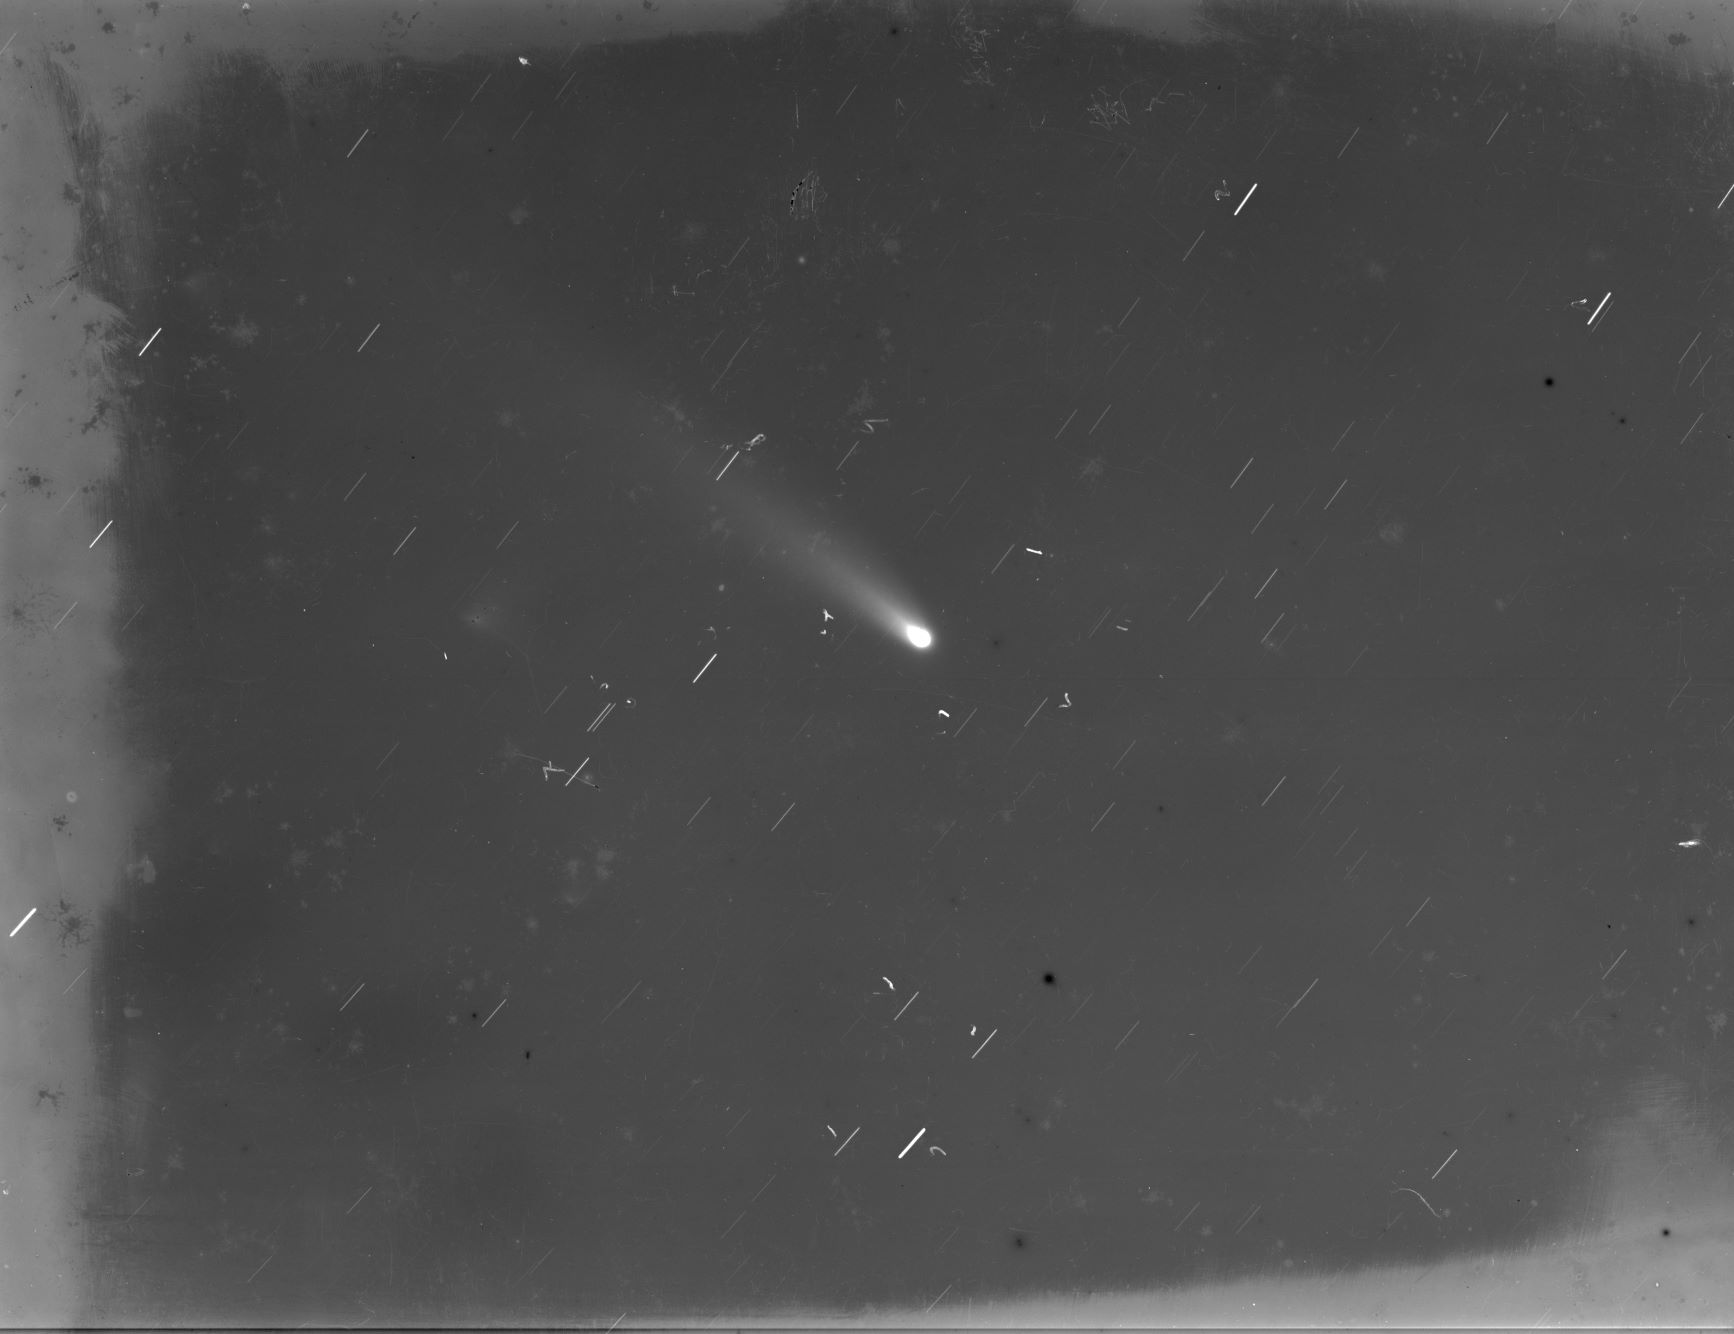 Fotografia da passagem do cometa Halley produzida no Observatório Nacional em 1986 